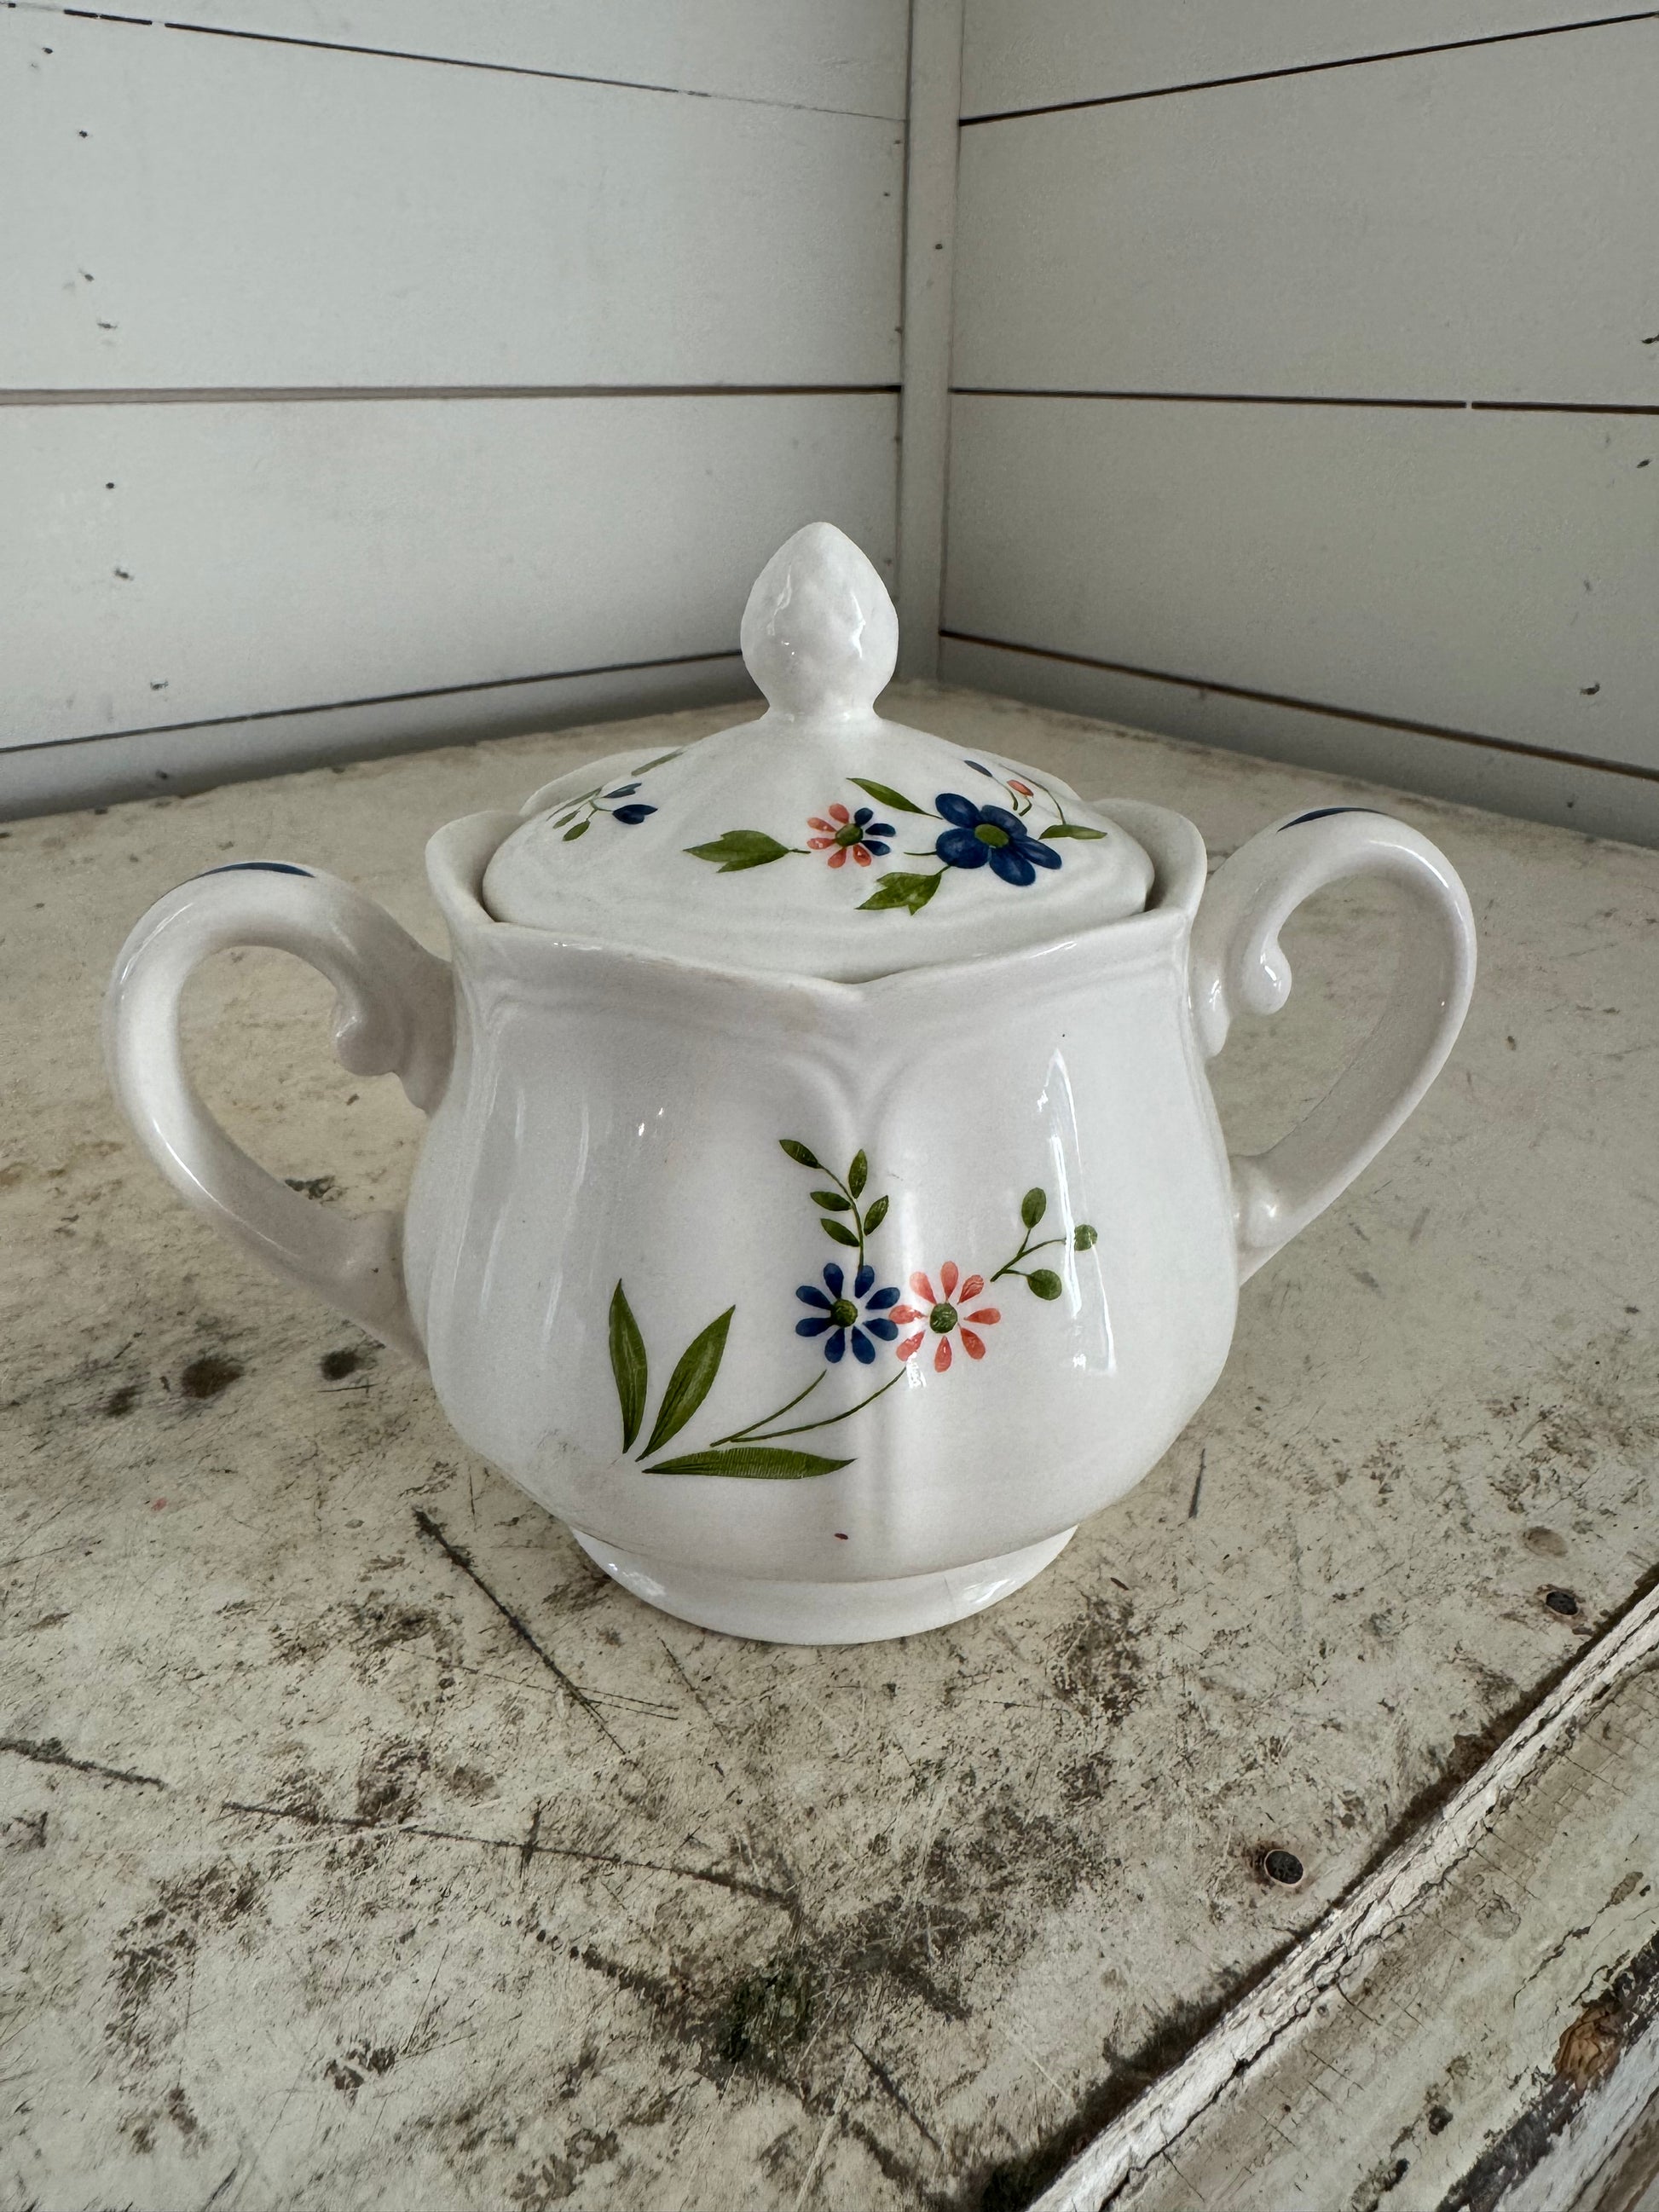 Sears Vintage Teapots